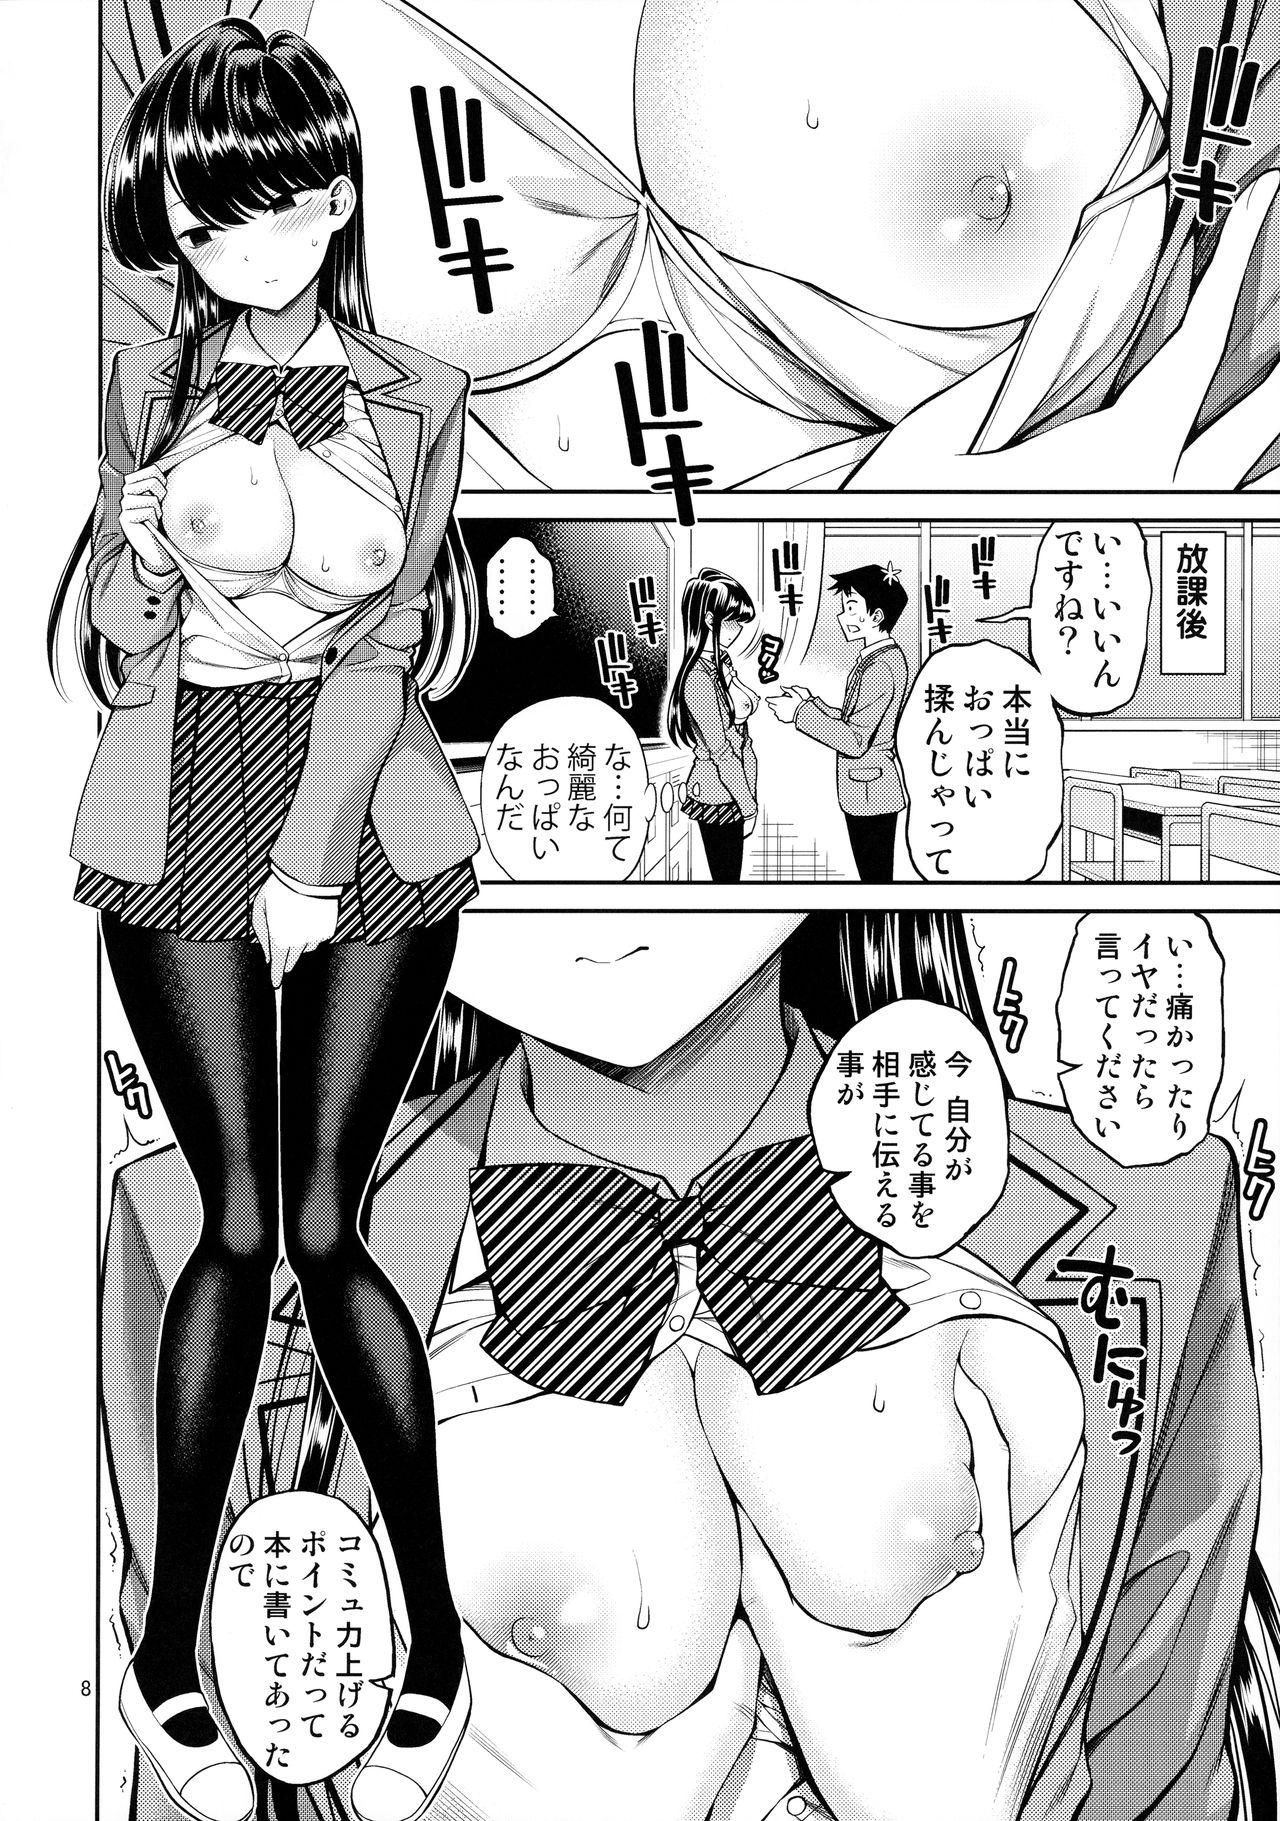 Slutty Komi-san wa, Binkan desu. - Komi-san wa komyushou desu. Ffm - Page 7